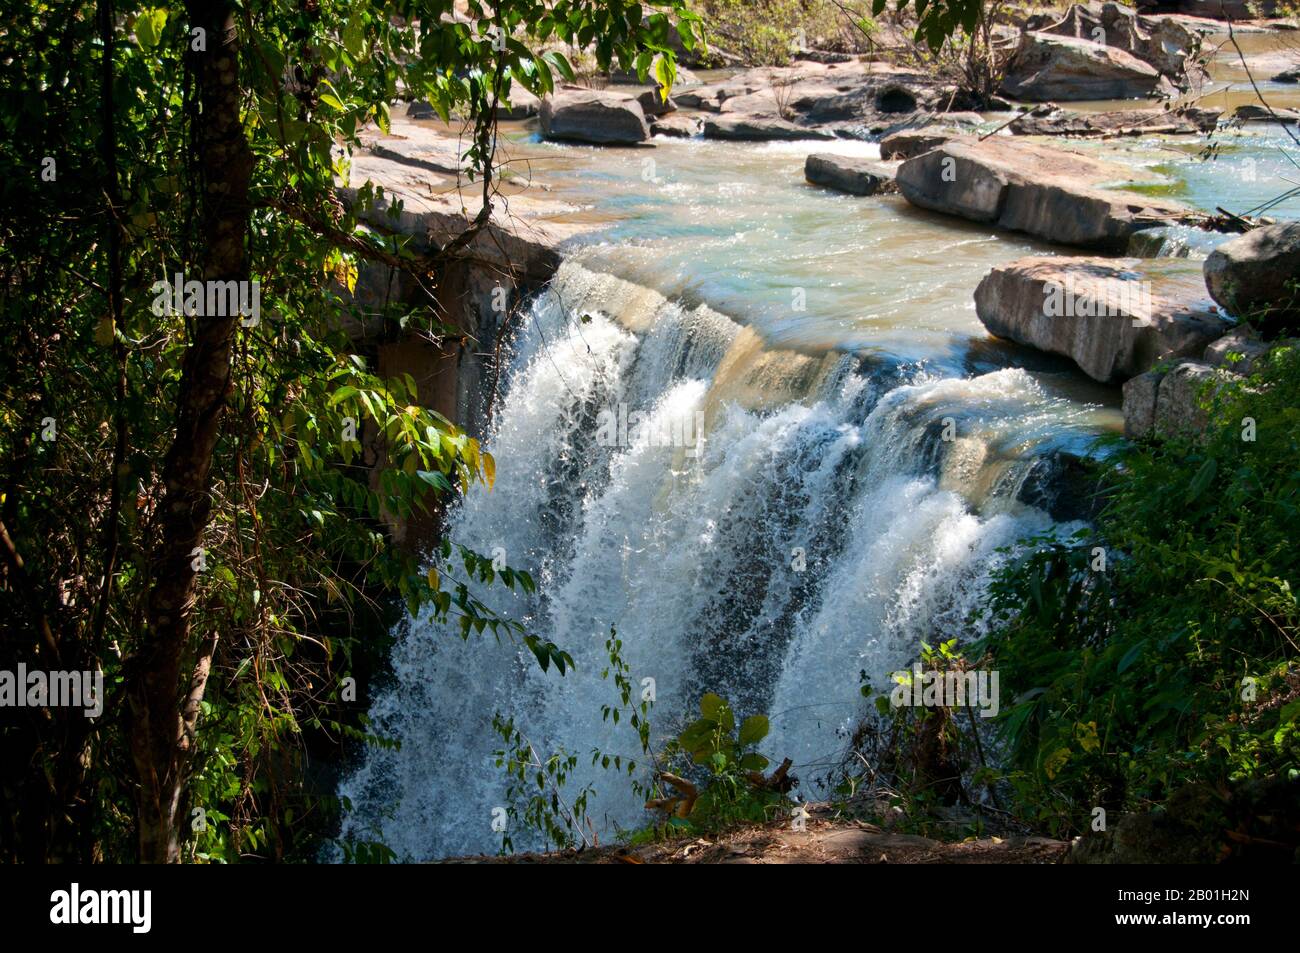 Thailand: PLA Ba-Wasserfall in der Nähe von Phu Ruea, Provinz Loei. Die Provinz Loei (Thai: เลย) befindet sich im oberen Nordosten Thailands. Die benachbarten Provinzen sind (von Osten nach rechts) Nong Khai, Udon Thani, Nongbua Lamphu, Khon Kaen, Phetchabun, Phitsanulok. Im Norden grenzt sie an die Provinzen Xaignabouli und Vientiane in Laos. Die Provinz ist von niedrigen Bergen bedeckt, während die Hauptstadt Loei in einem fruchtbaren Becken liegt. Der Fluss Loei, der durch die Provinz fließt, ist ein Nebenfluss des Mekong, der zusammen mit dem kleineren Fluss Hueang die nördliche Grenze der Provinz bildet. Stockfoto